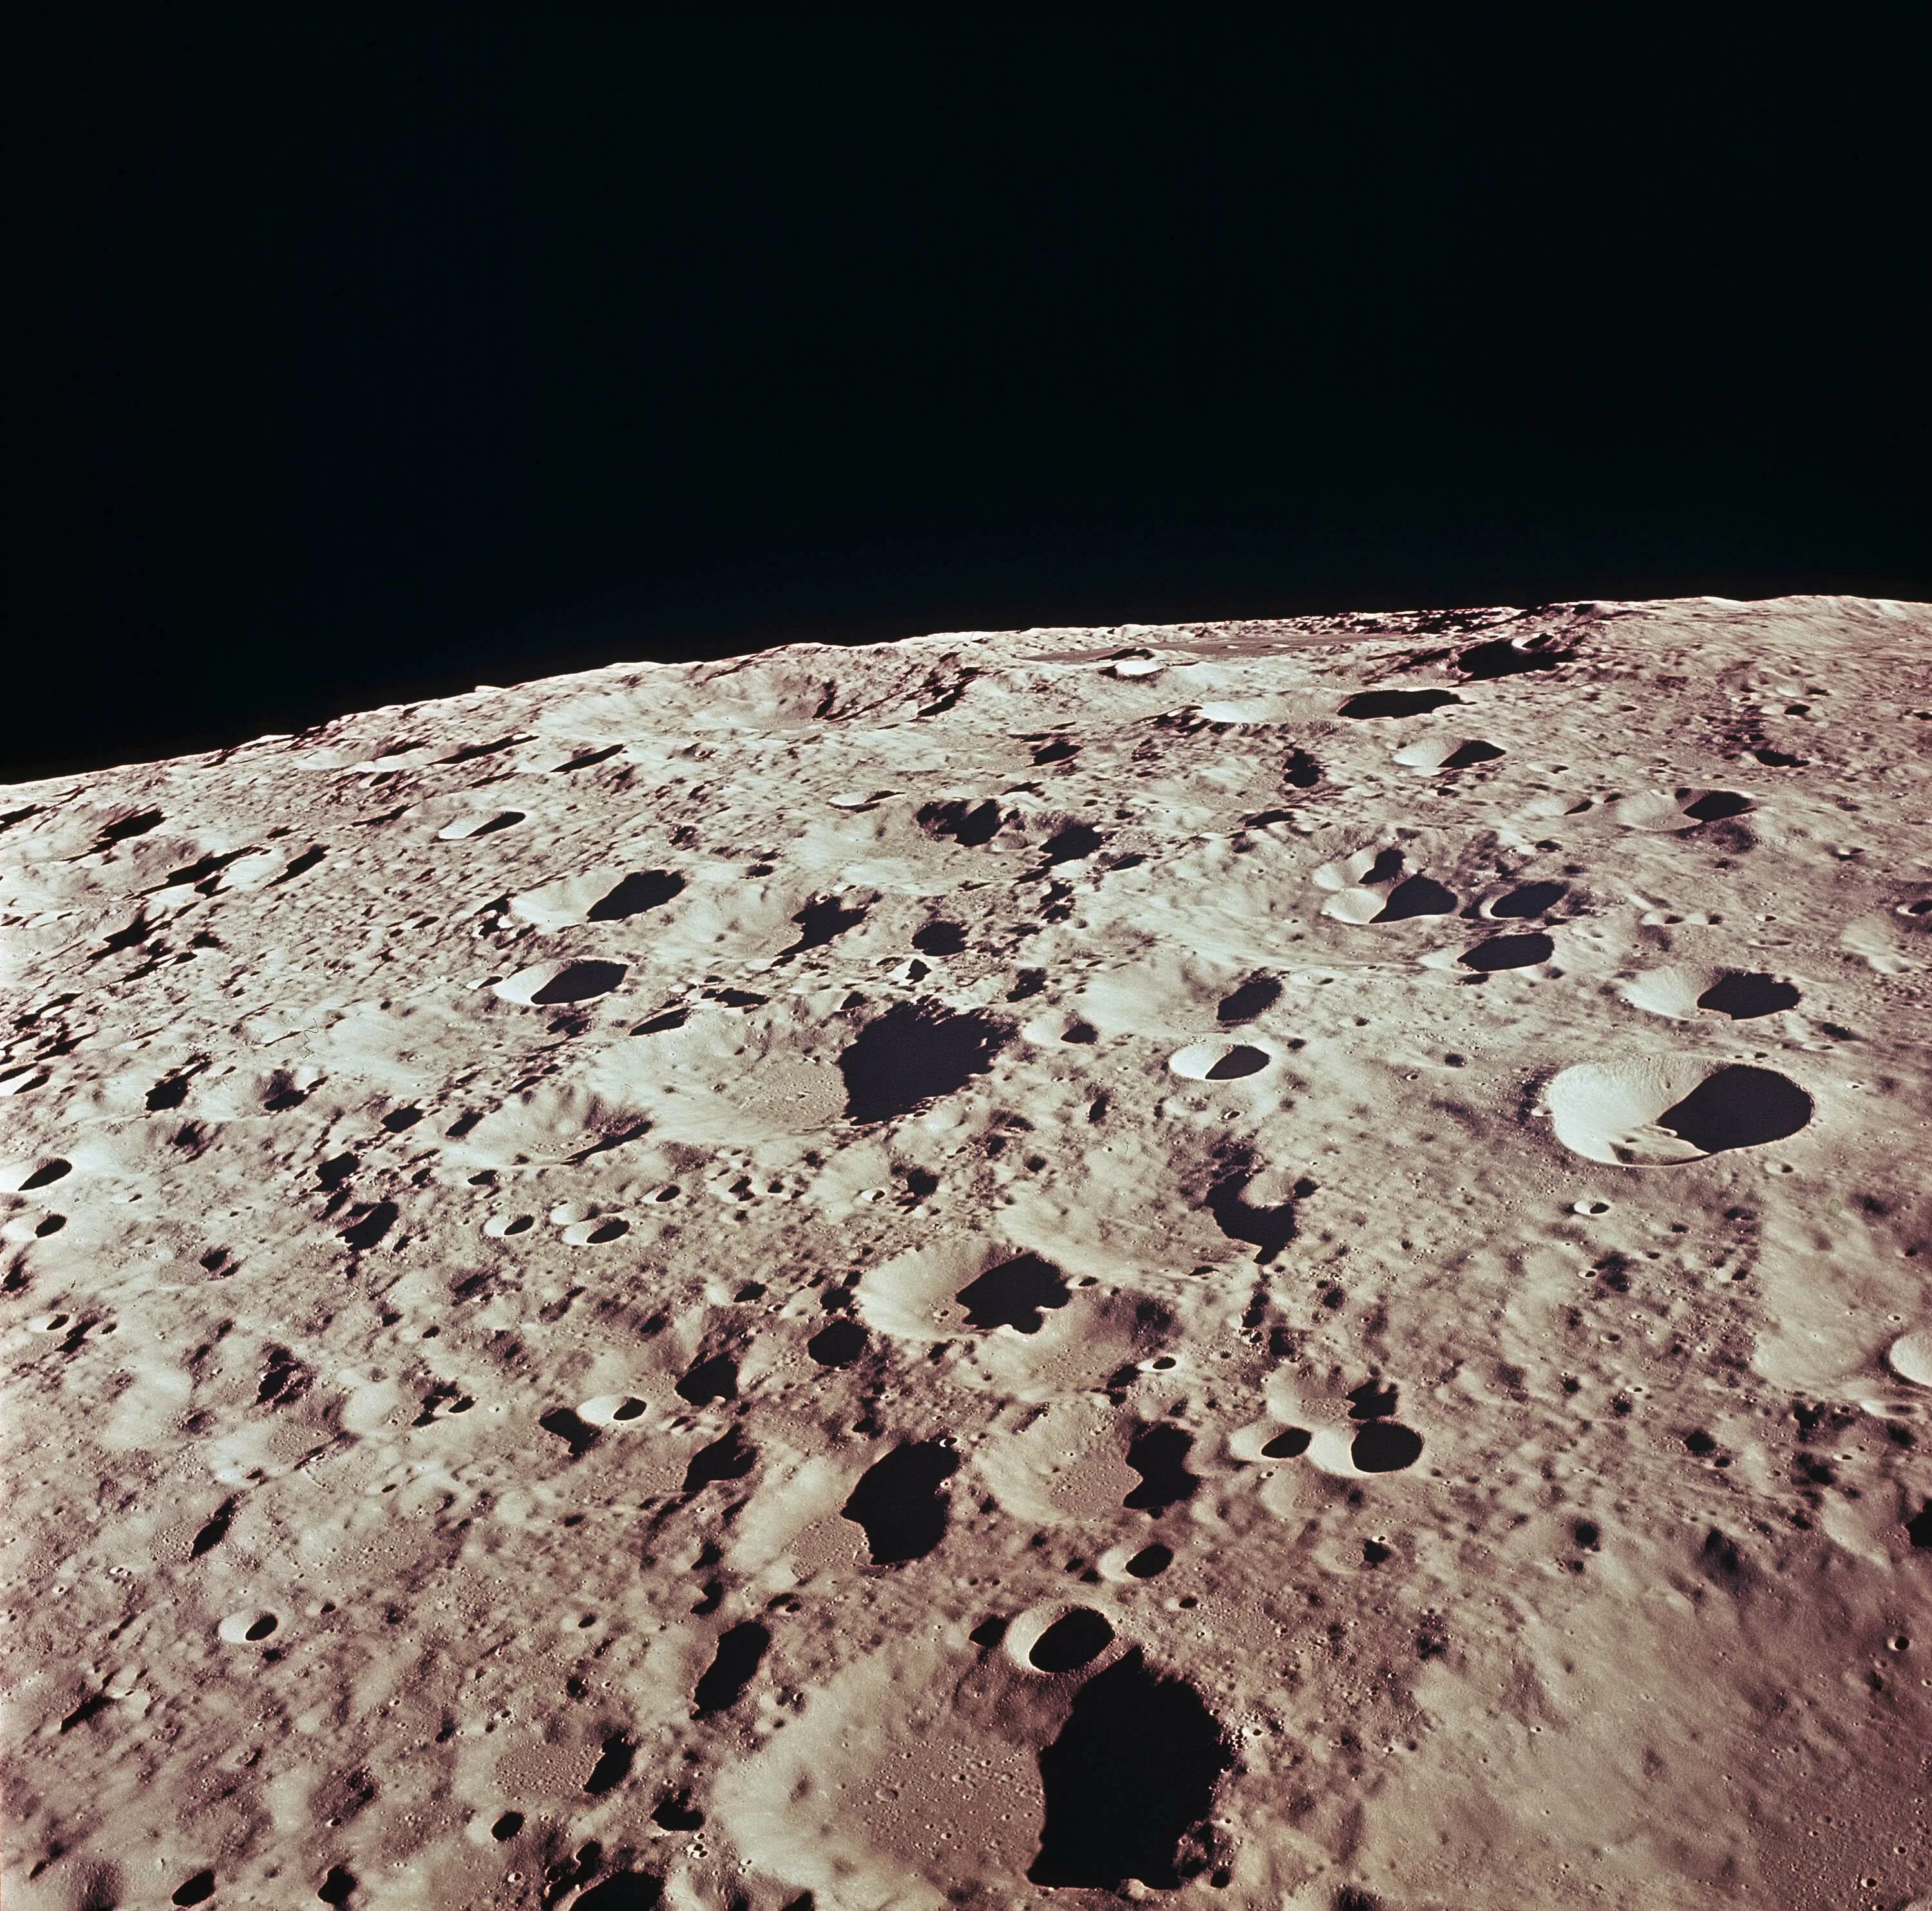 Key t ru. Кратер Аполлон на Луне. Кратер Лунная поверхность Луны. Секретные снимки Луны НАСА. Кратер на обратной стороне Луны.